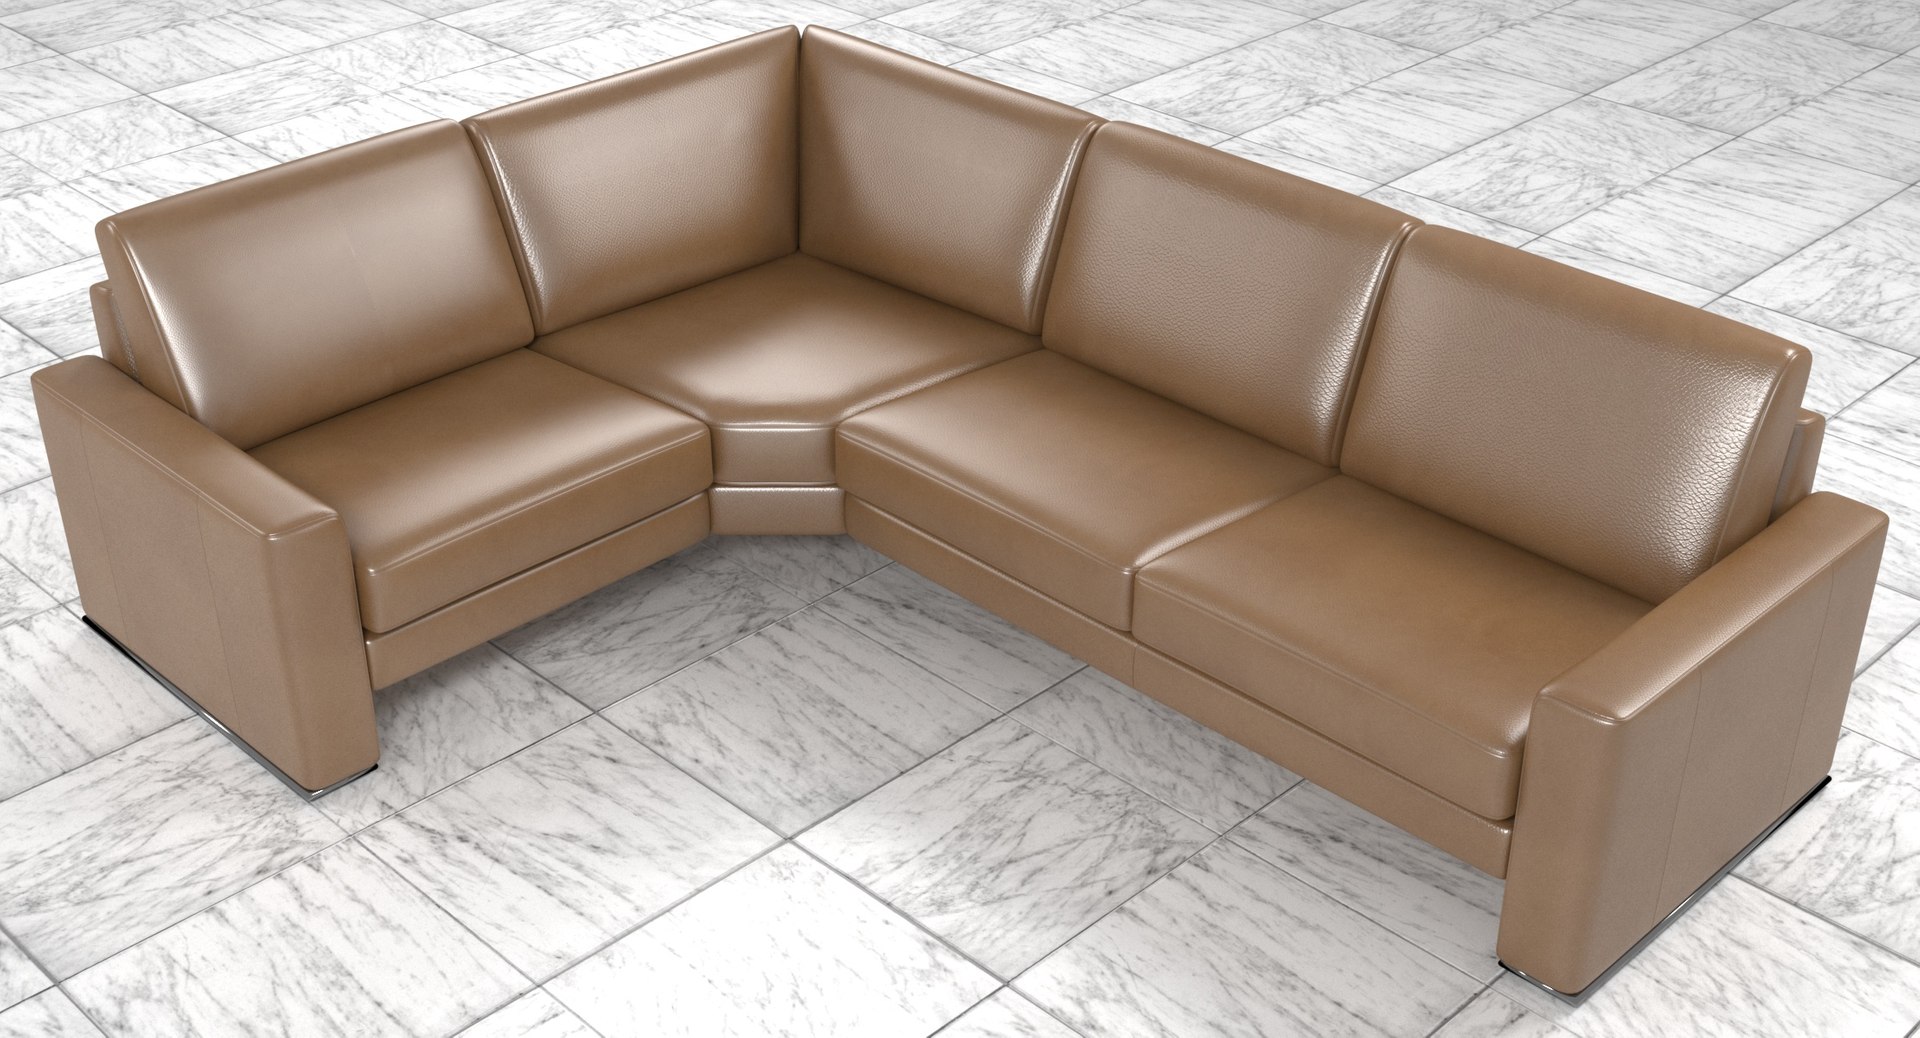 模块化棕色皮革织物转角 4 人沙发3d模型